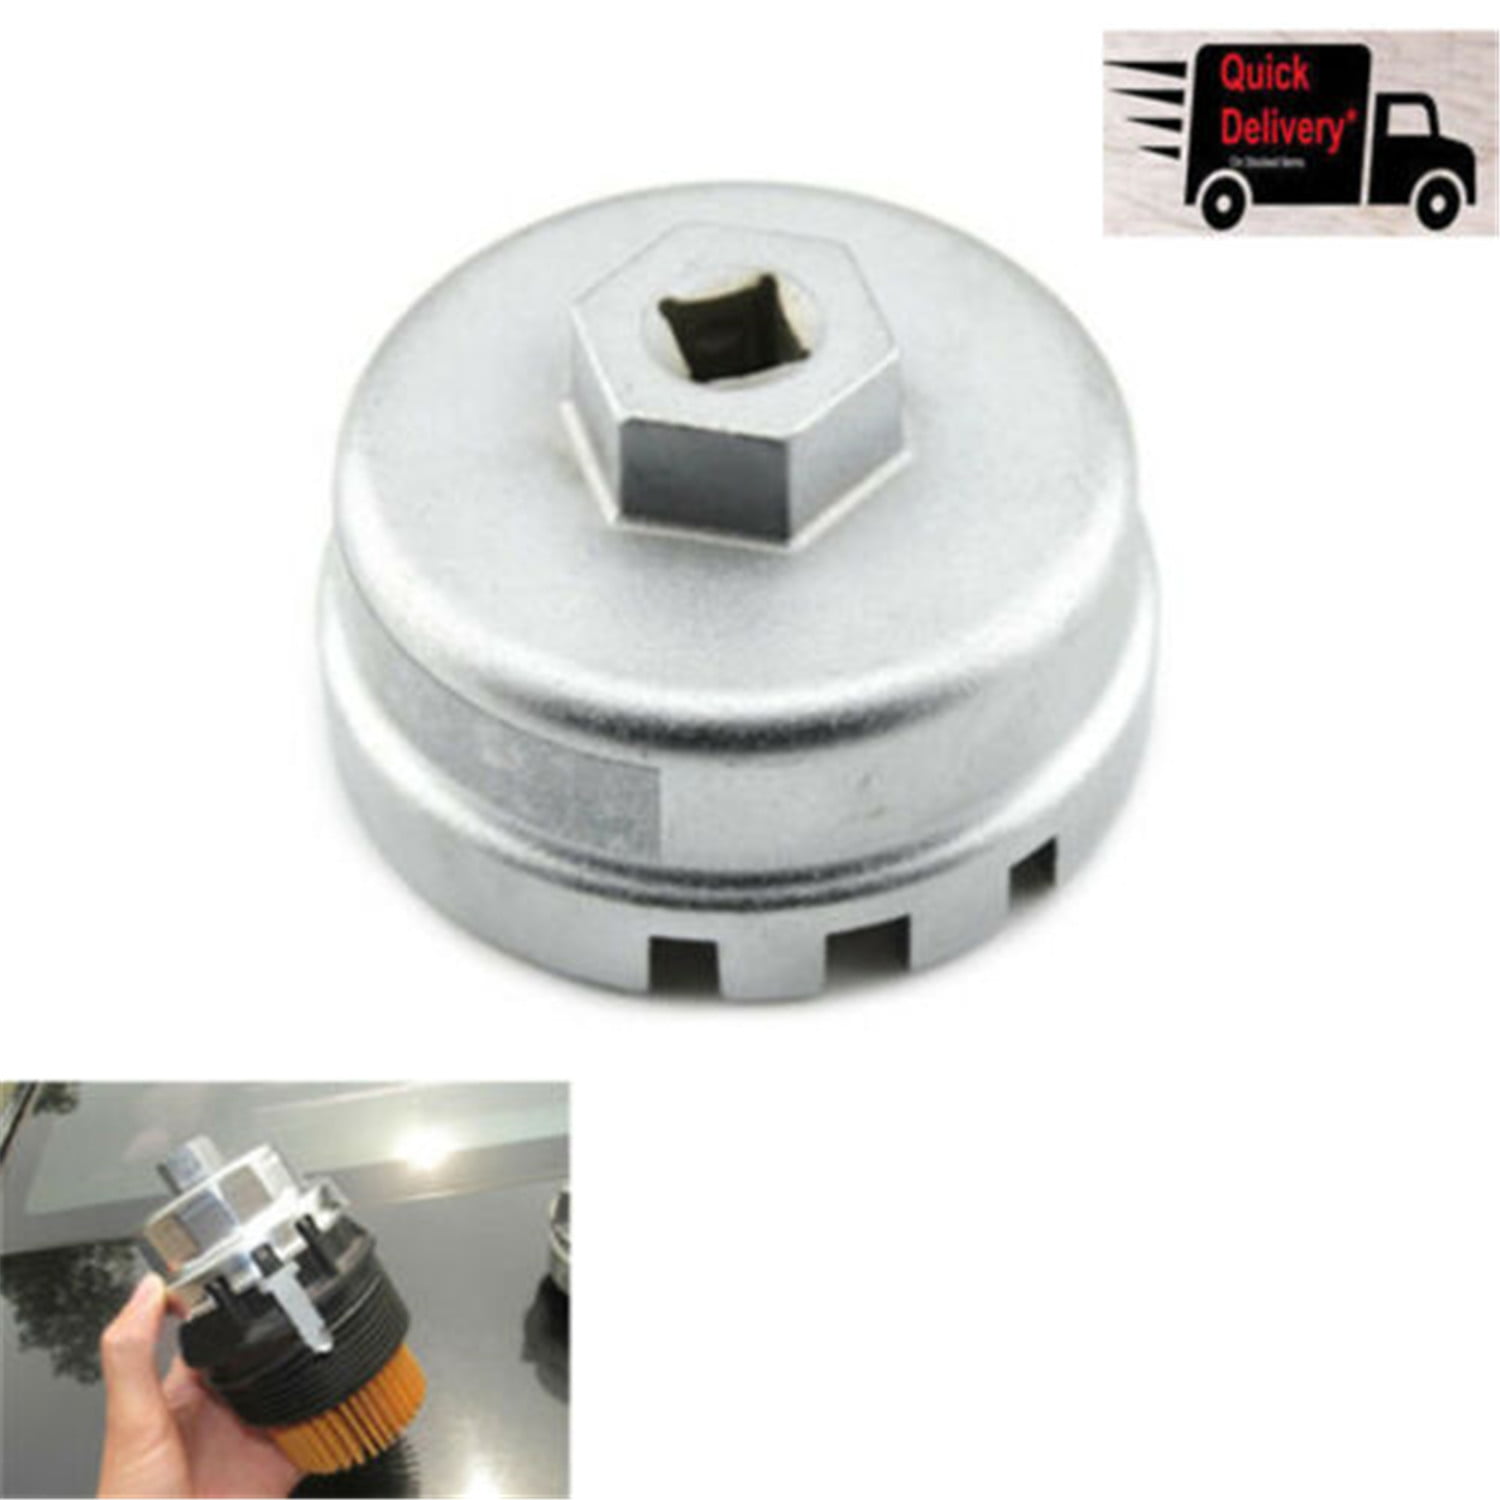 64mm Oil Filter Cap Wrench Socket Remover Housing Tool For Toyota RAV4 Lexus